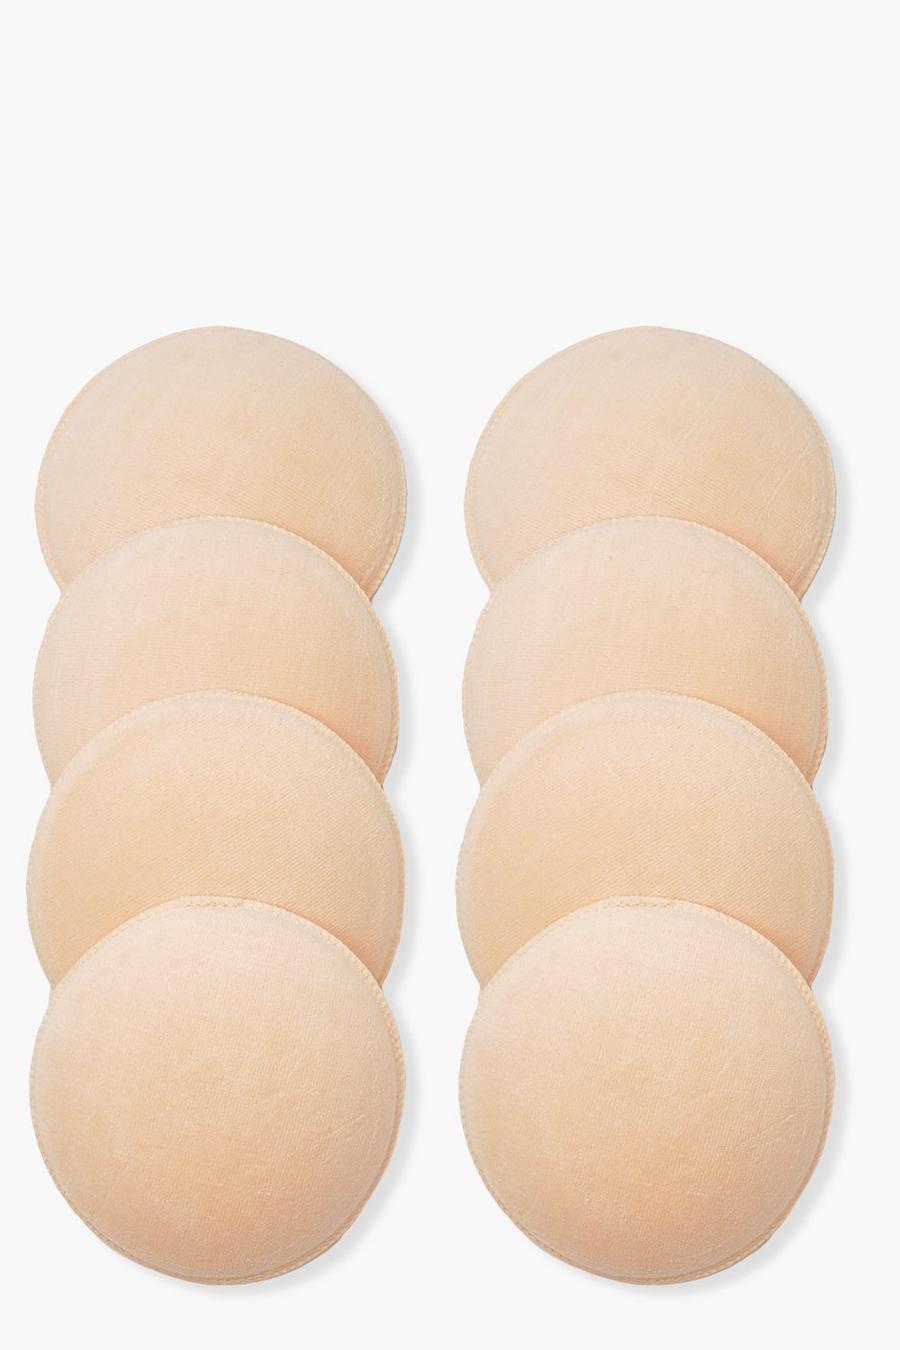 Nude Mammakläder - Tvättbara bröstpaddar som inte läcker (8-pack) image number 1